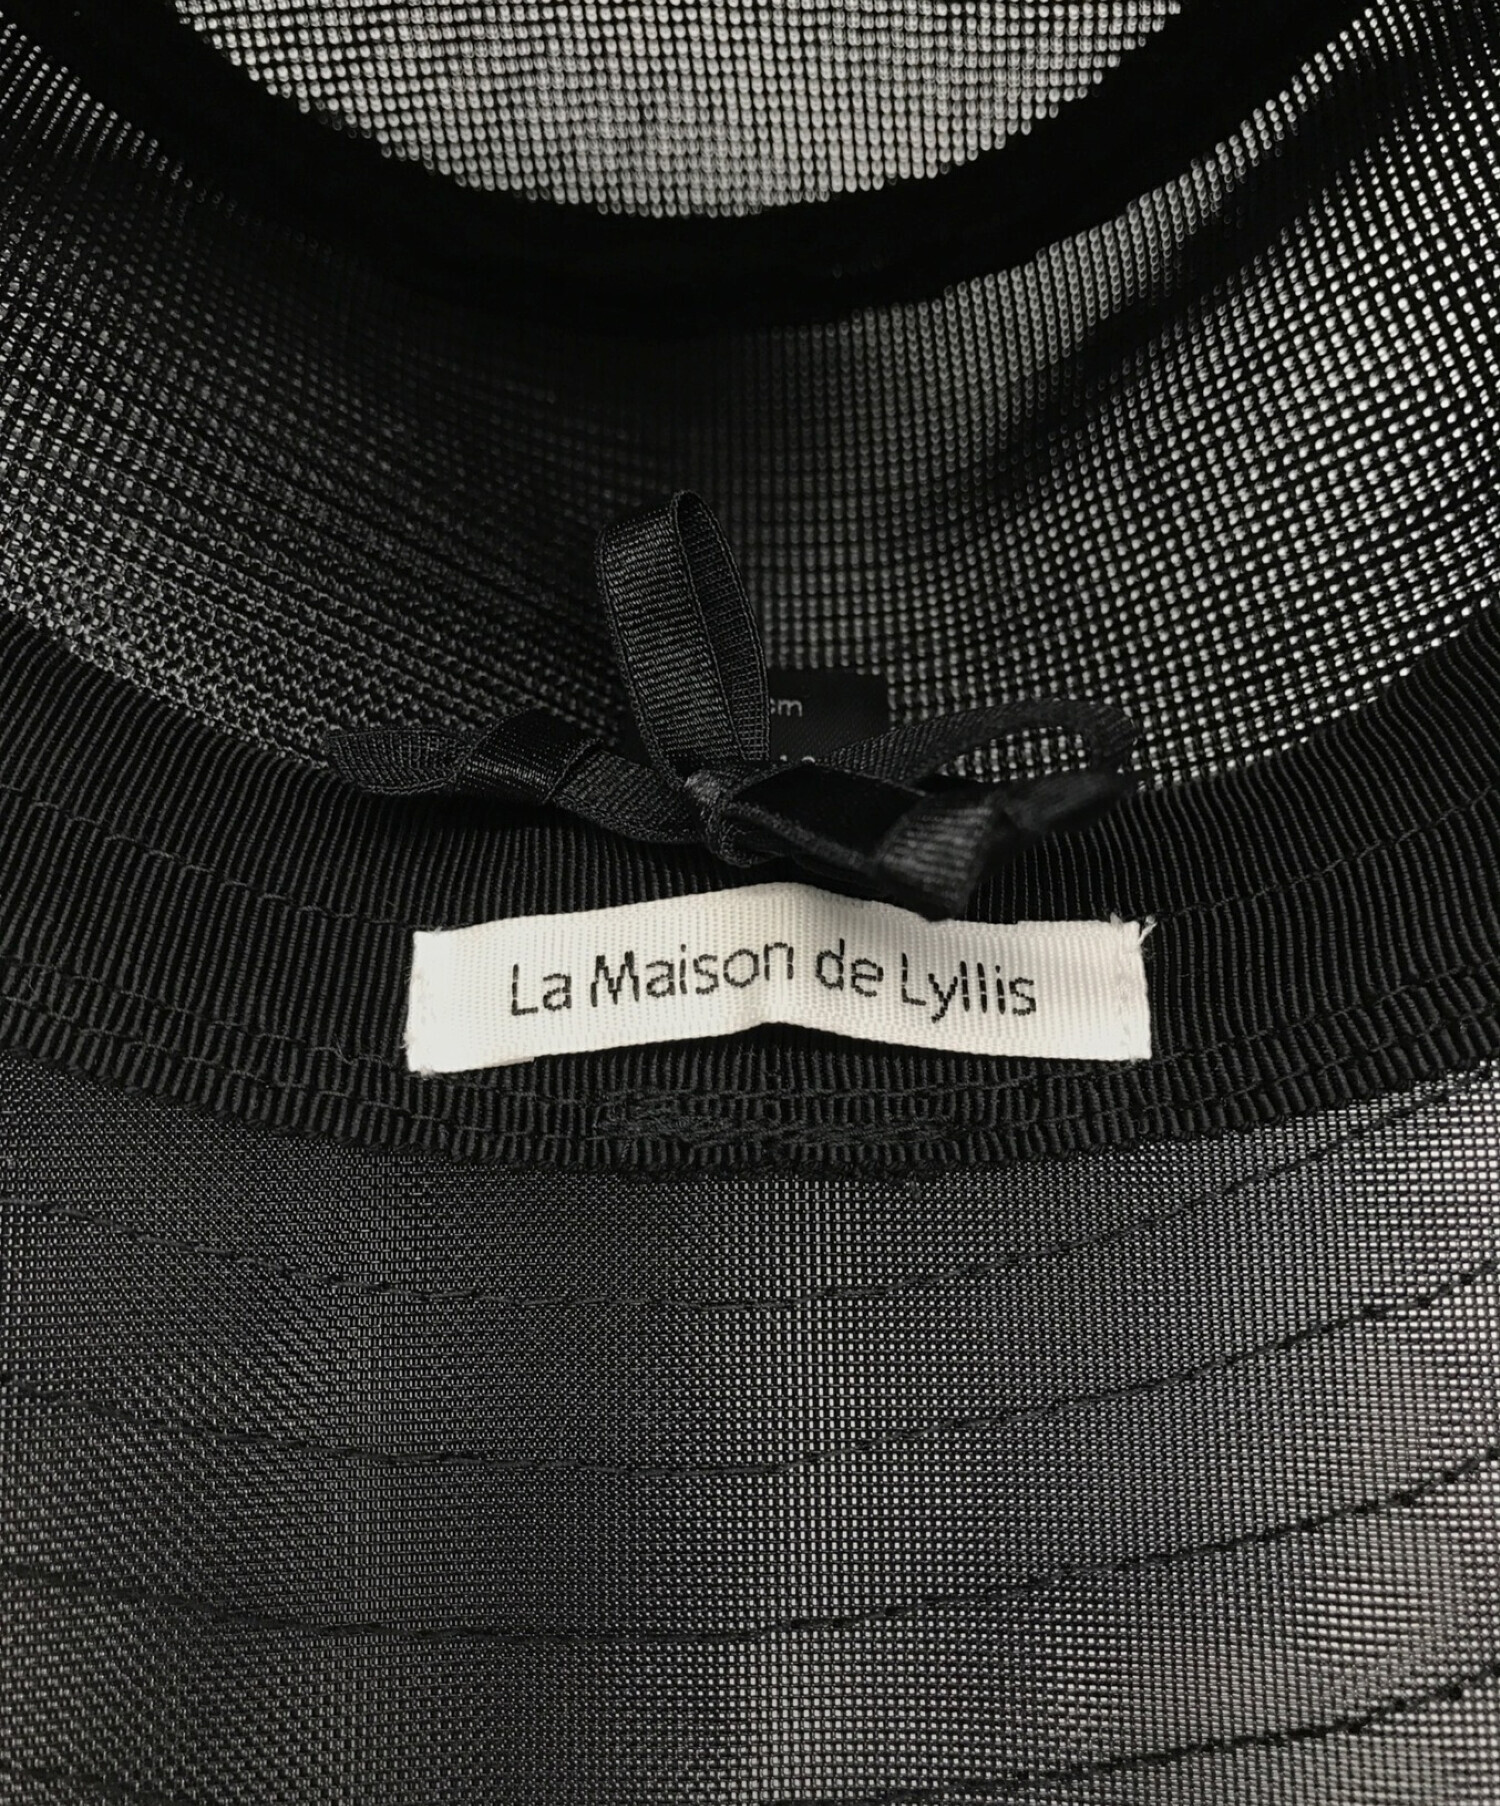 La Maison de Lyllis (ラメゾンドリリス) グラスポットハット ブラック サイズ:-